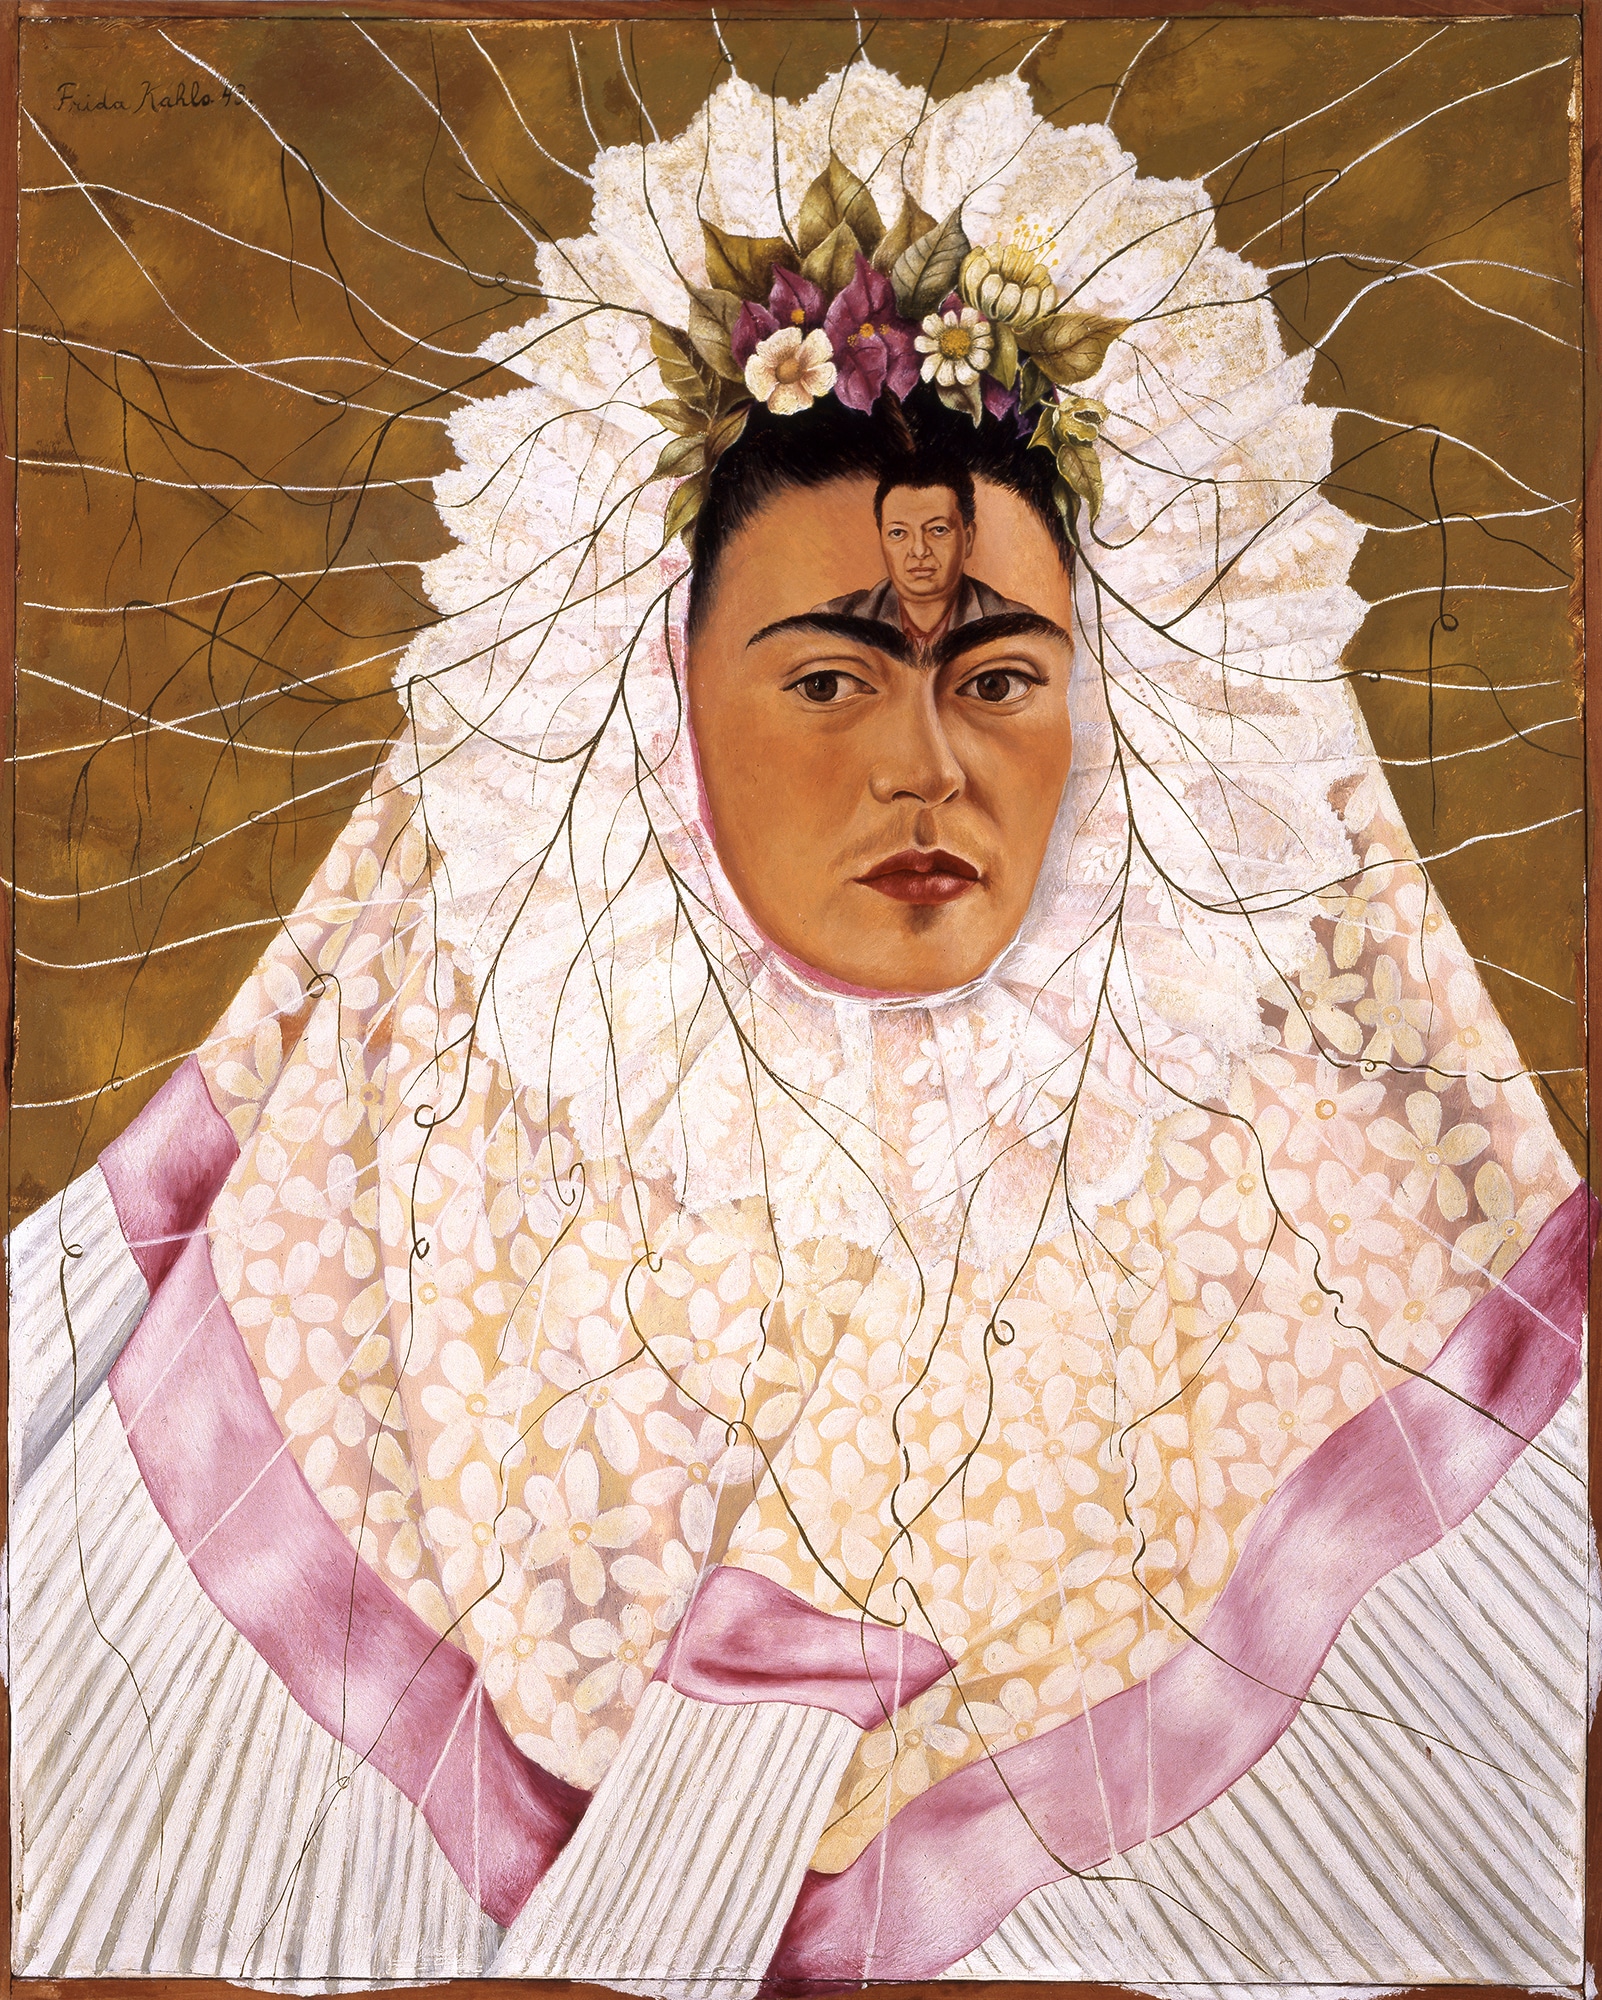 Афиша: «Внешность обманчива»: в феврале Нью-Йорк узнает Фриду Кало заново рис 15